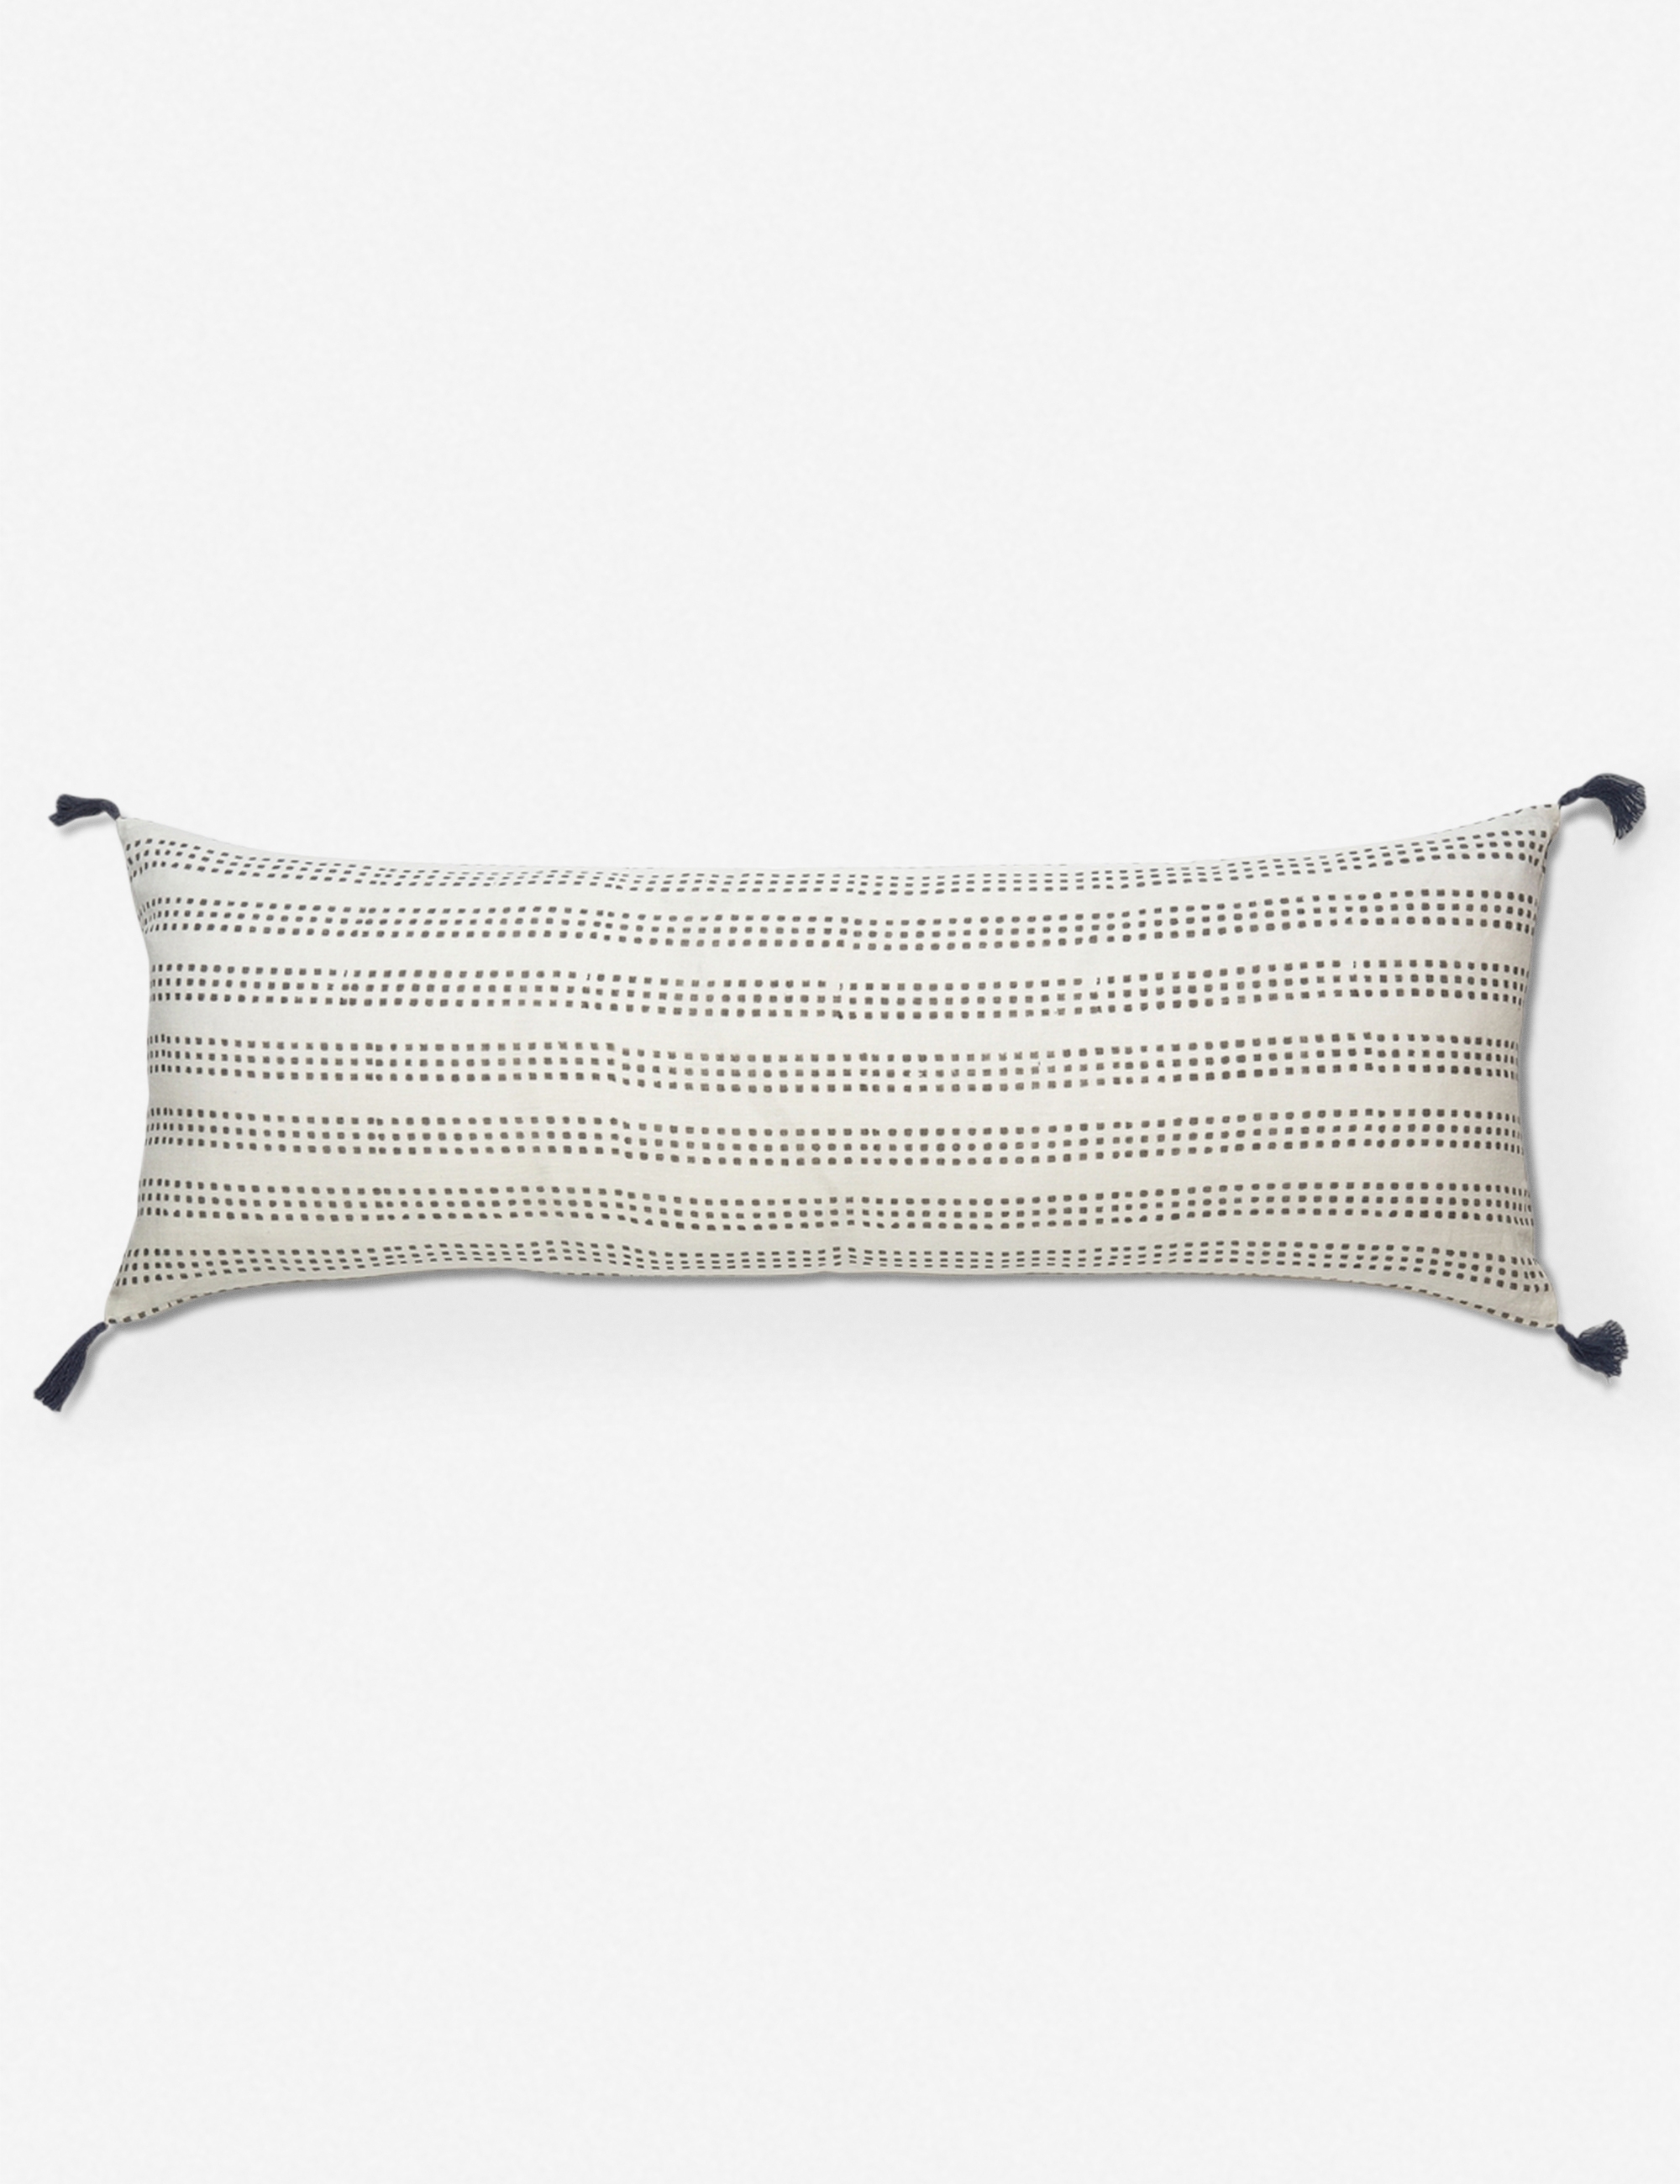 January Lumbar Pillow, Ash, 14" x 40" - Image 0